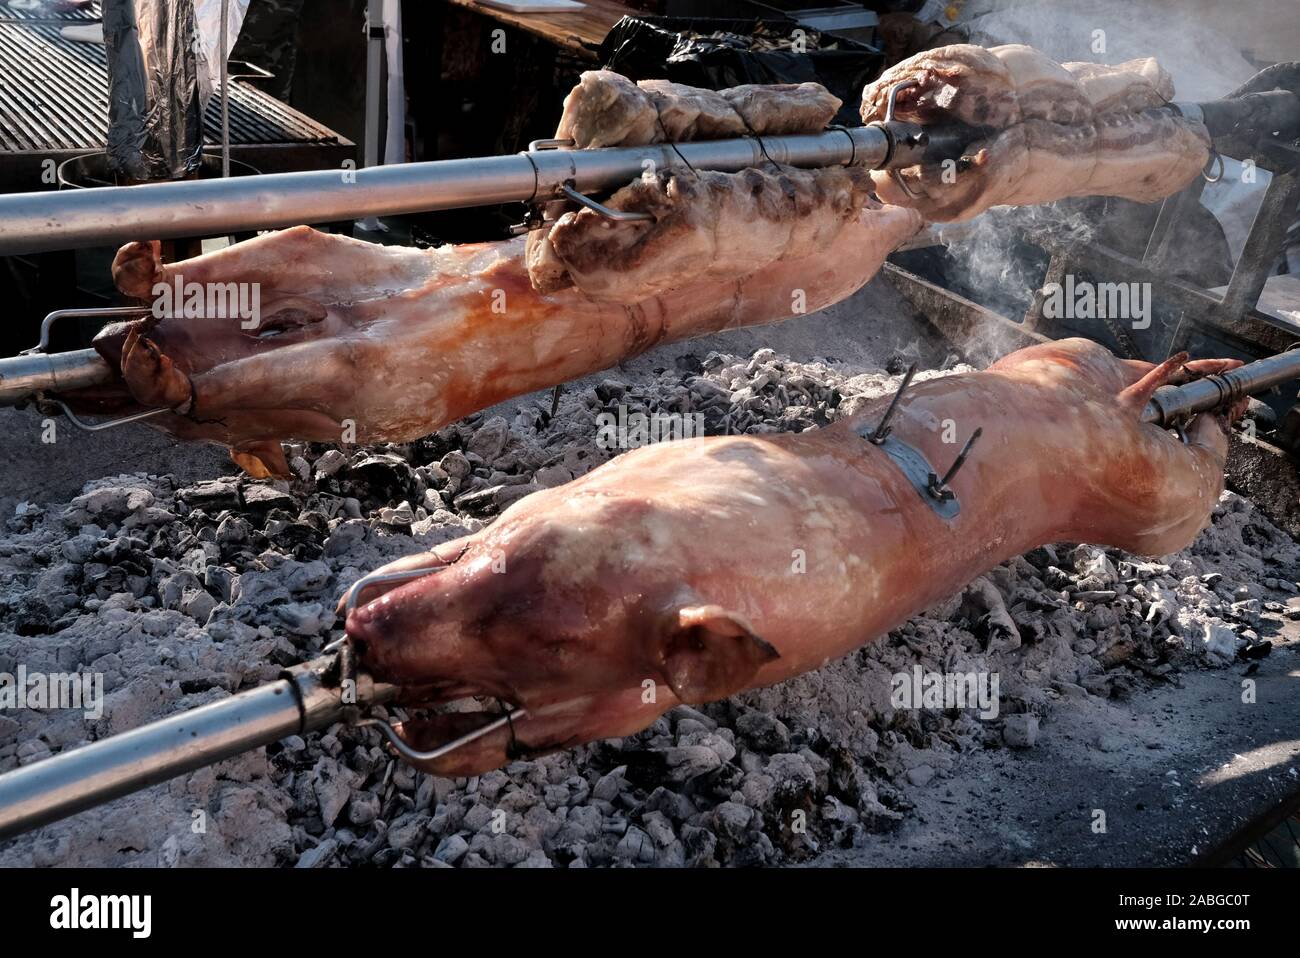 Rôti de porc - Vieille ville de Plovdiv - Balkans - BULGARIE Título : Tryavna -- Bulgarie mentions de copyright Banque D'Images